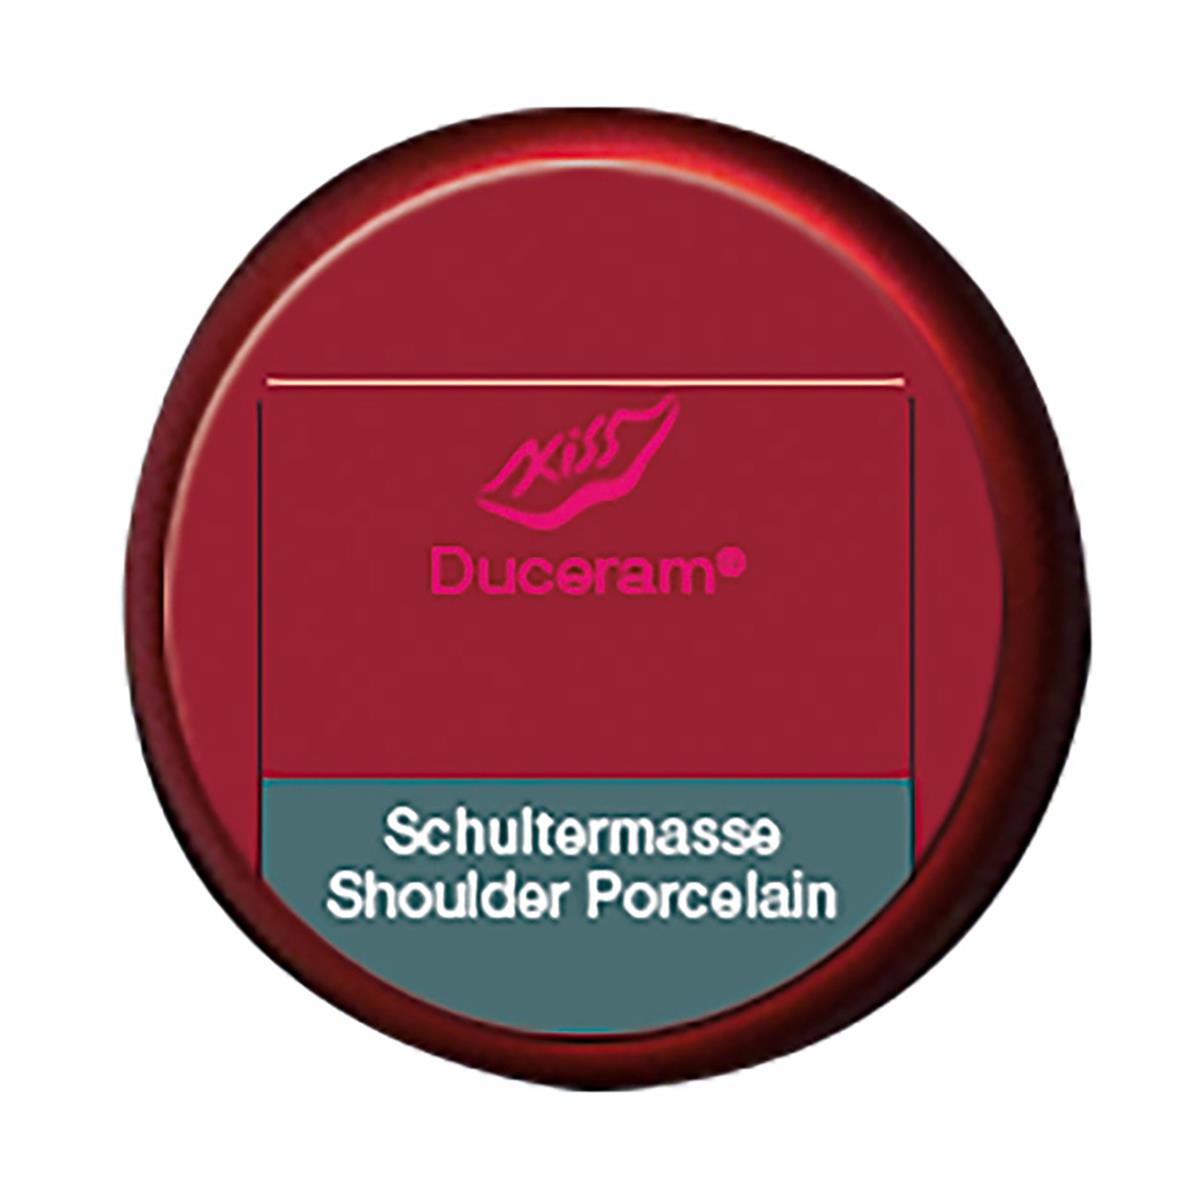 Duceram Kiss Shoulder Porcelain SM 1 20g